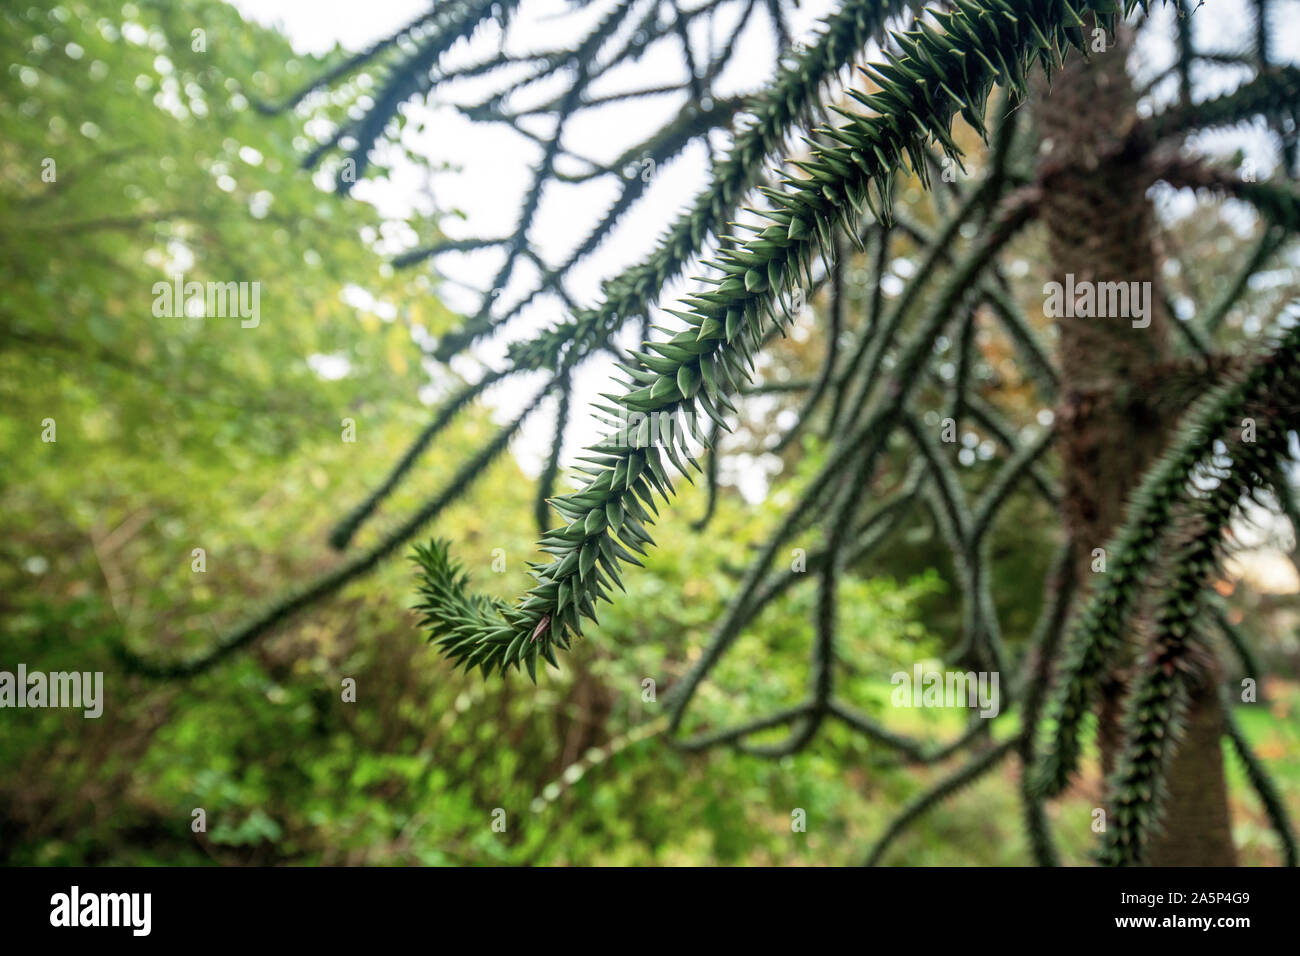 La propagation horizontale-serpent comme branche d'une espèce en voie d'evergreen 'conifères Araucaria araucana' monkey puzzle arbre avec des feuilles d'échelle étroite Banque D'Images